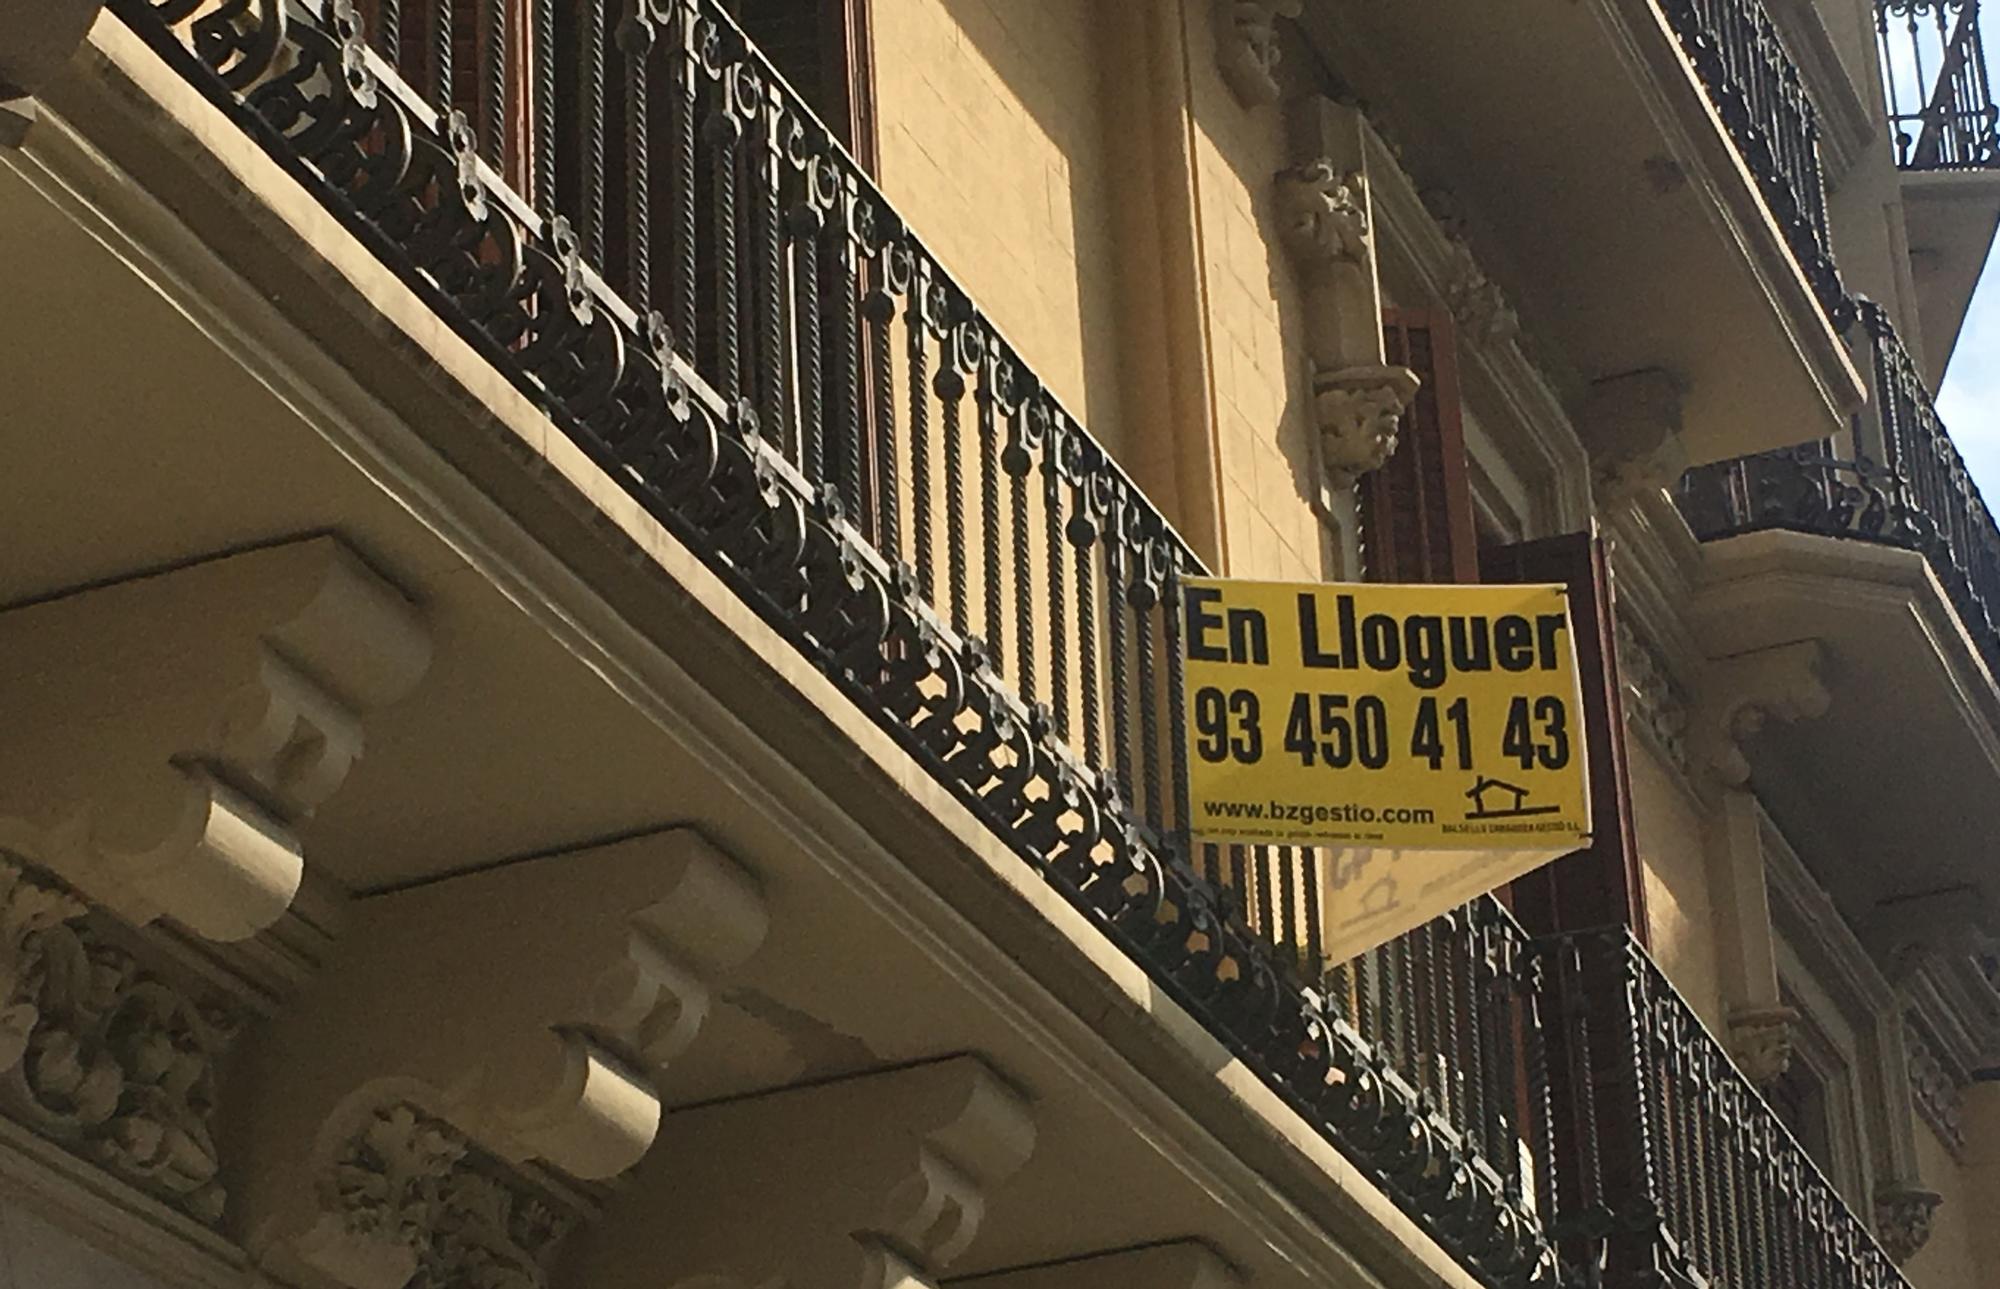 Cartel de un piso en alquiler en el Eixample, en Barcelona.